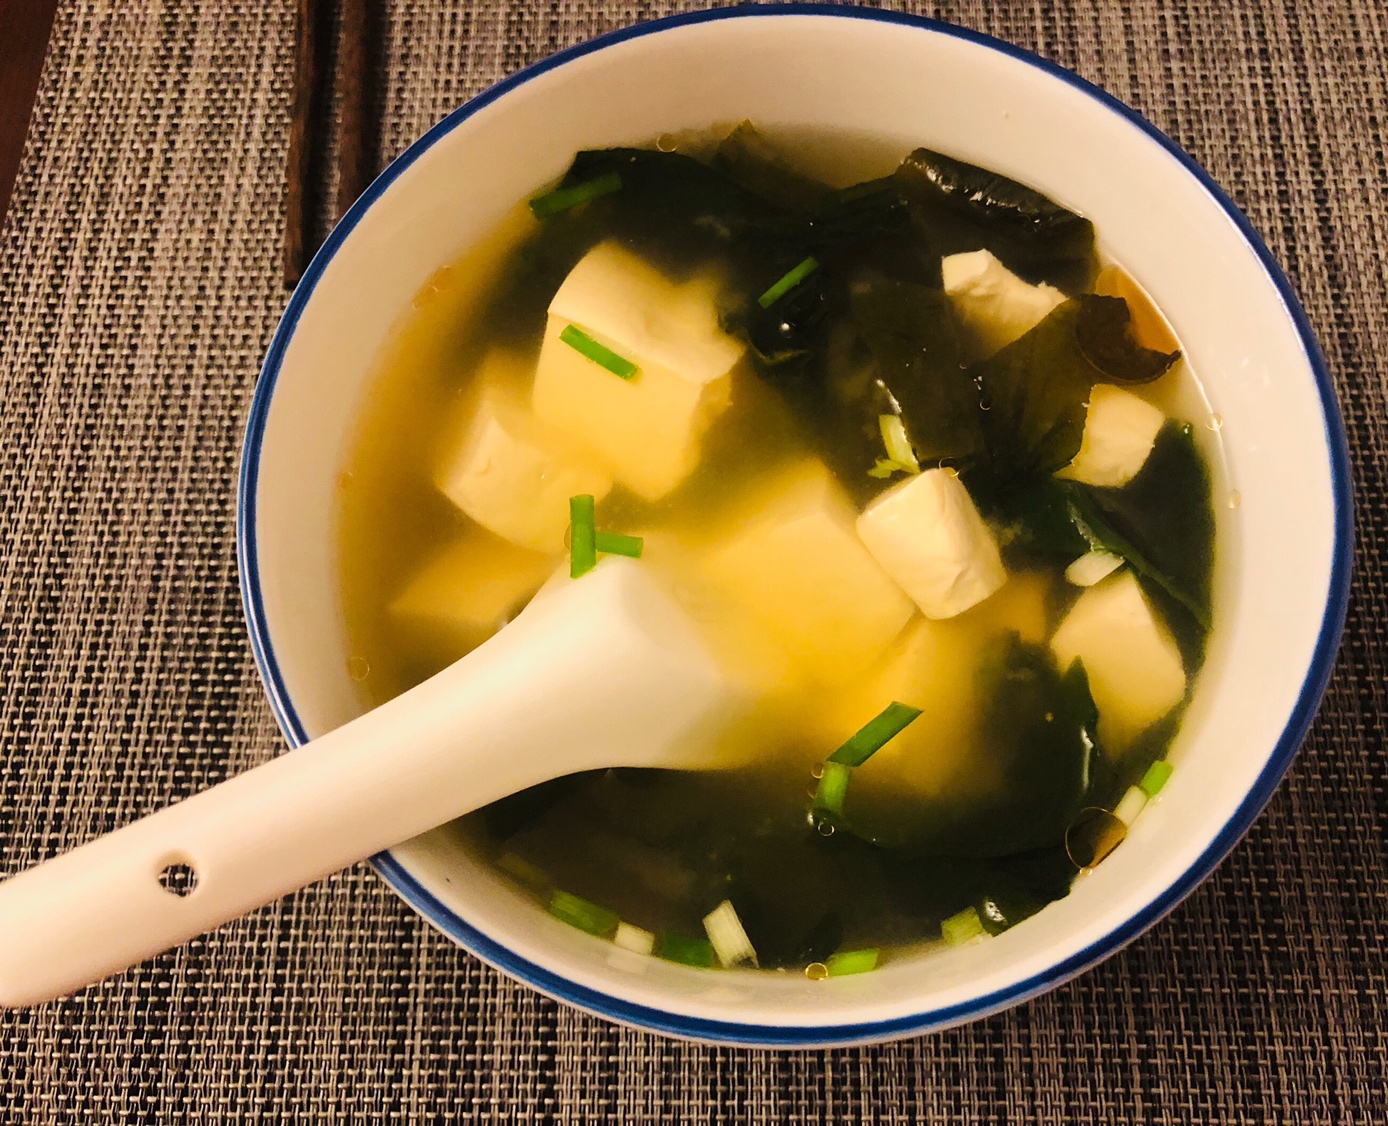 日式味增汤的做法